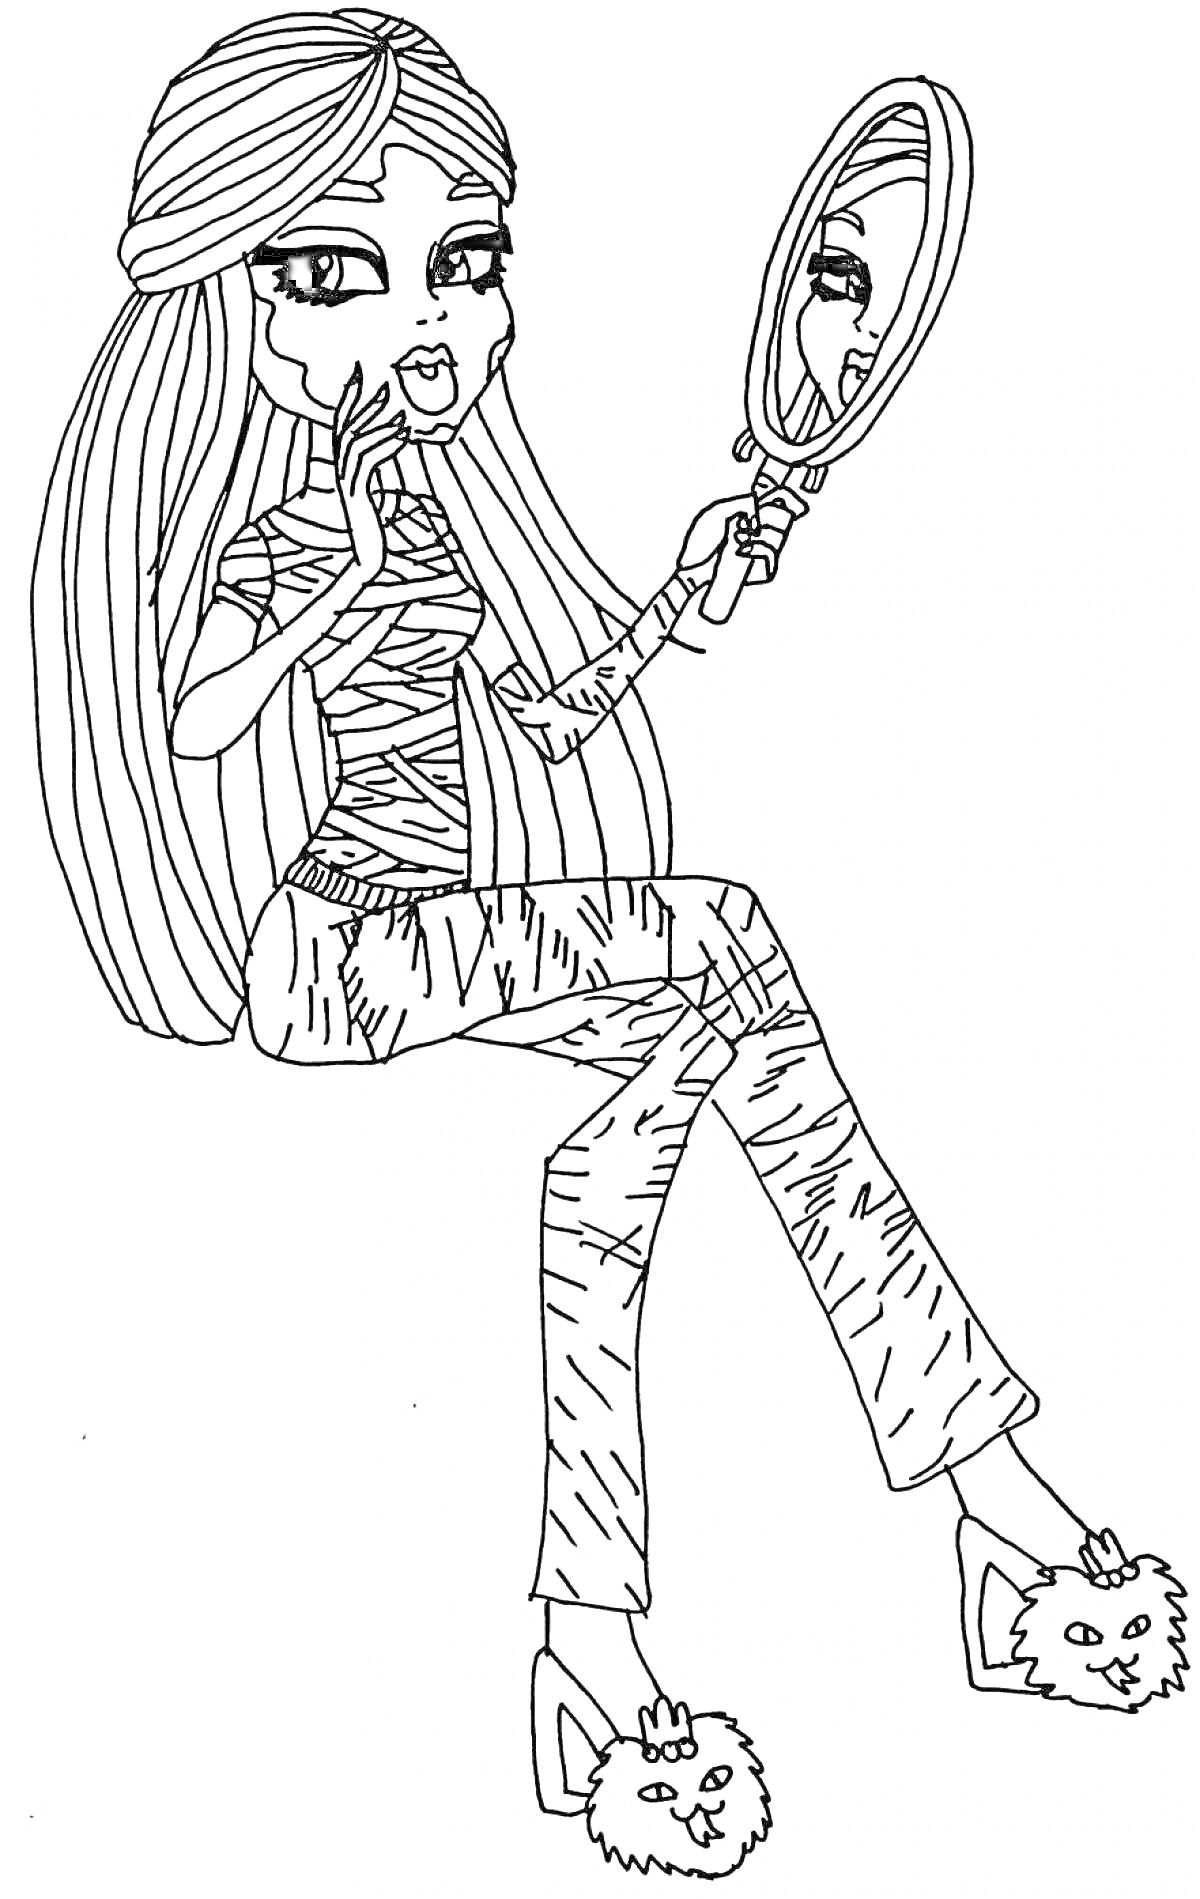 Мумифицированная девушка из Монстр Хай с длинными волосами, держащая зеркало в одной руке и сидящая, обутая в тапочки с мордочками зверей